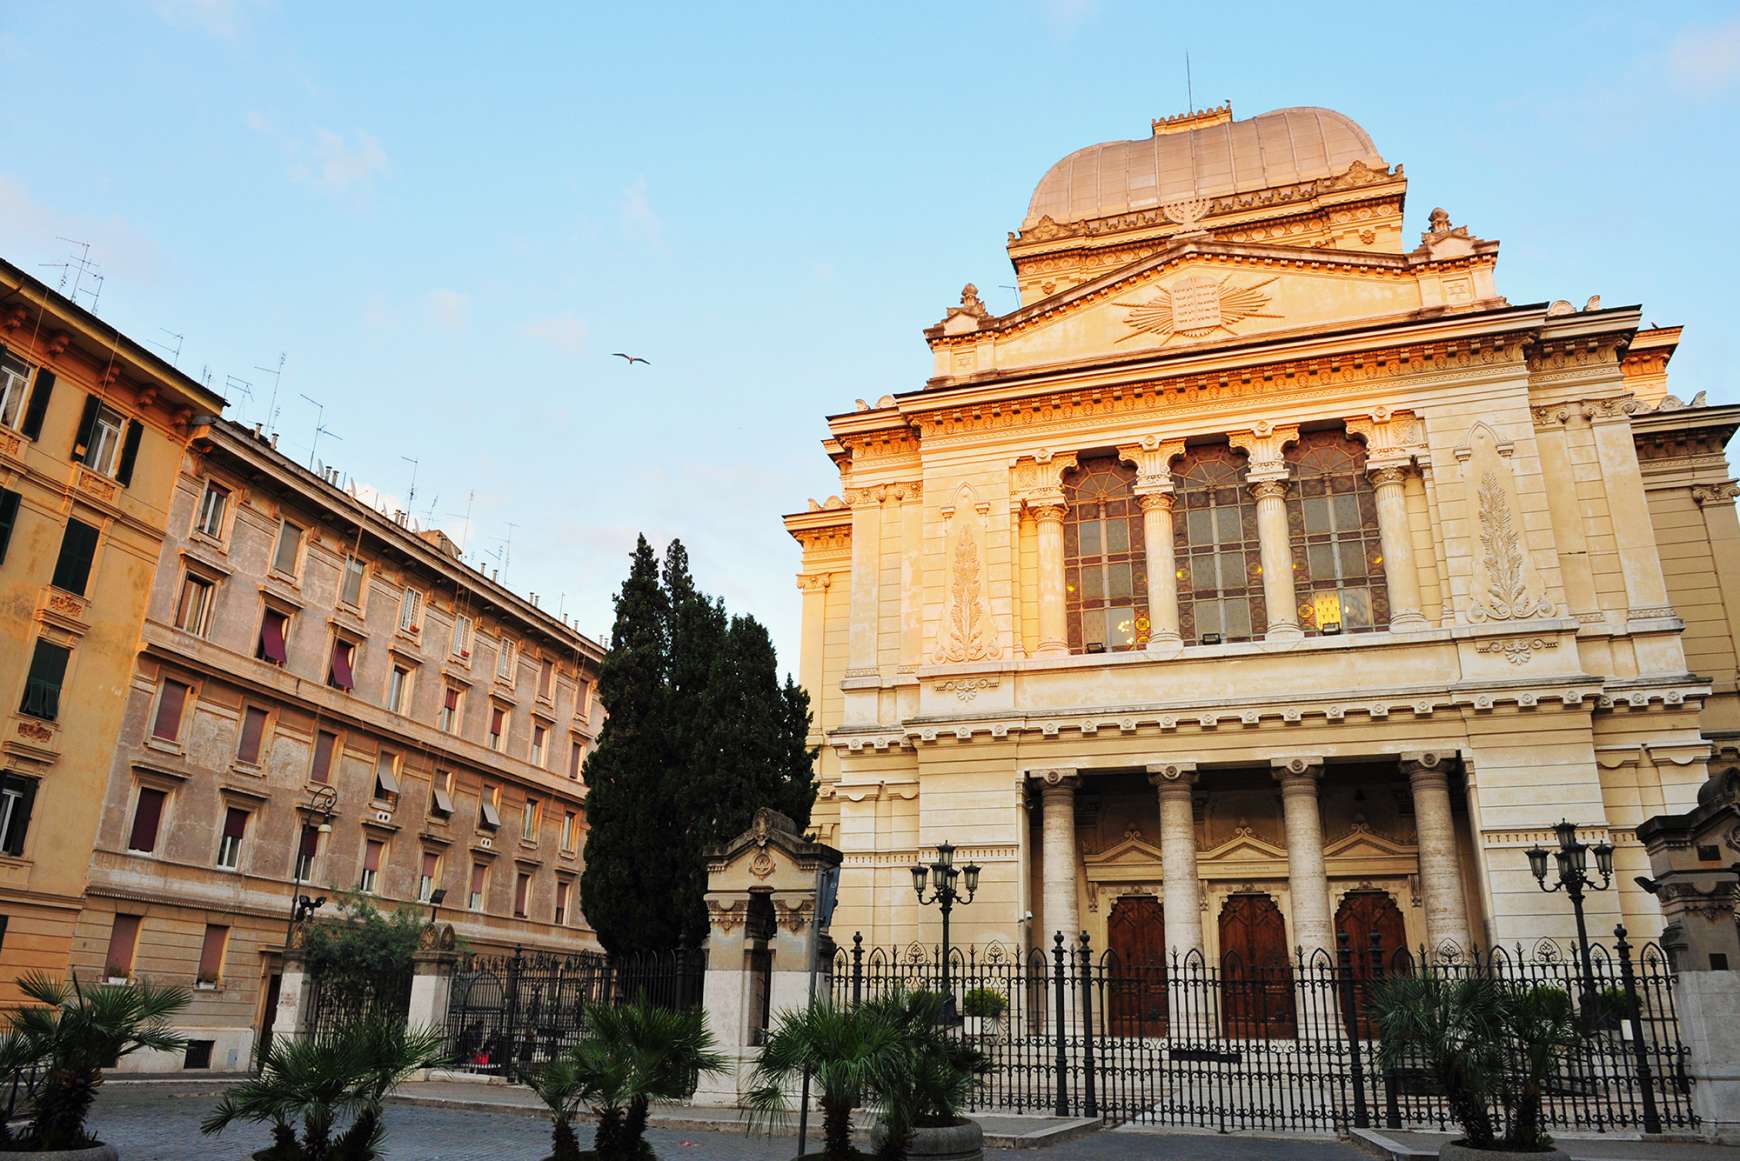 Facade of Tempio Maggiore, Jewish Synagogue in Rome